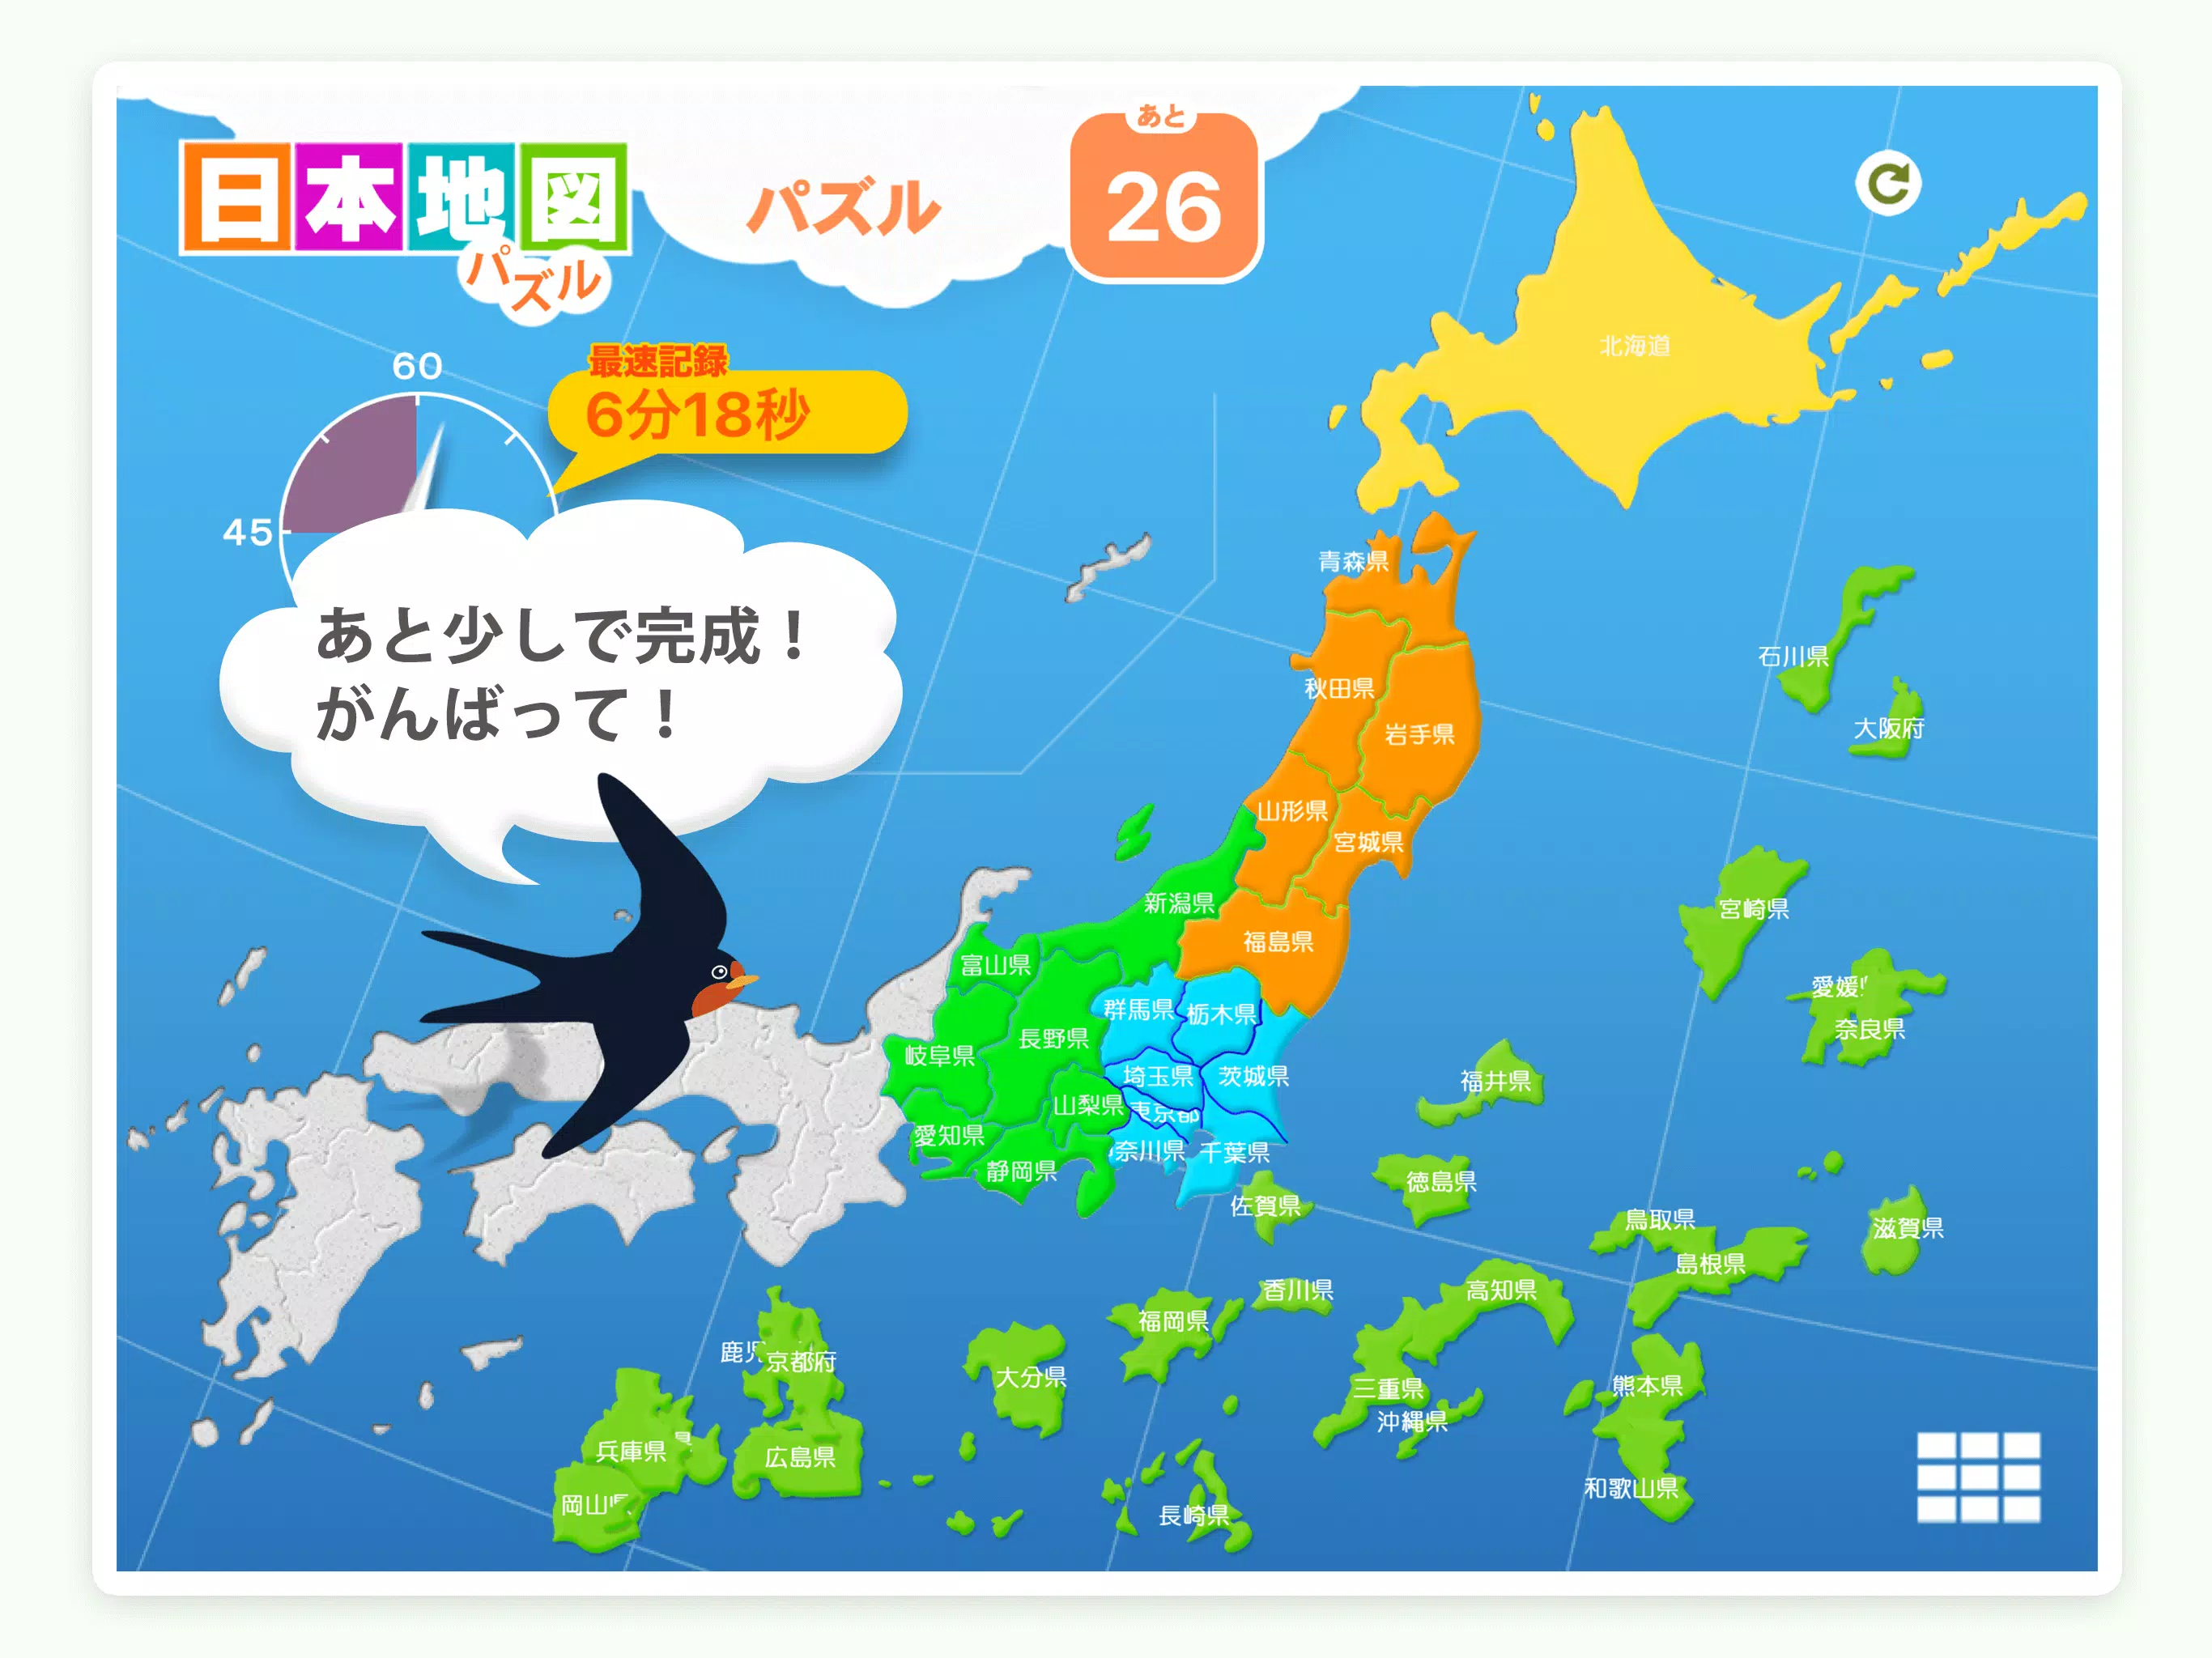 日本地図パズル 楽しく学べる教材シリーズ Apk Untuk Unduhan Android